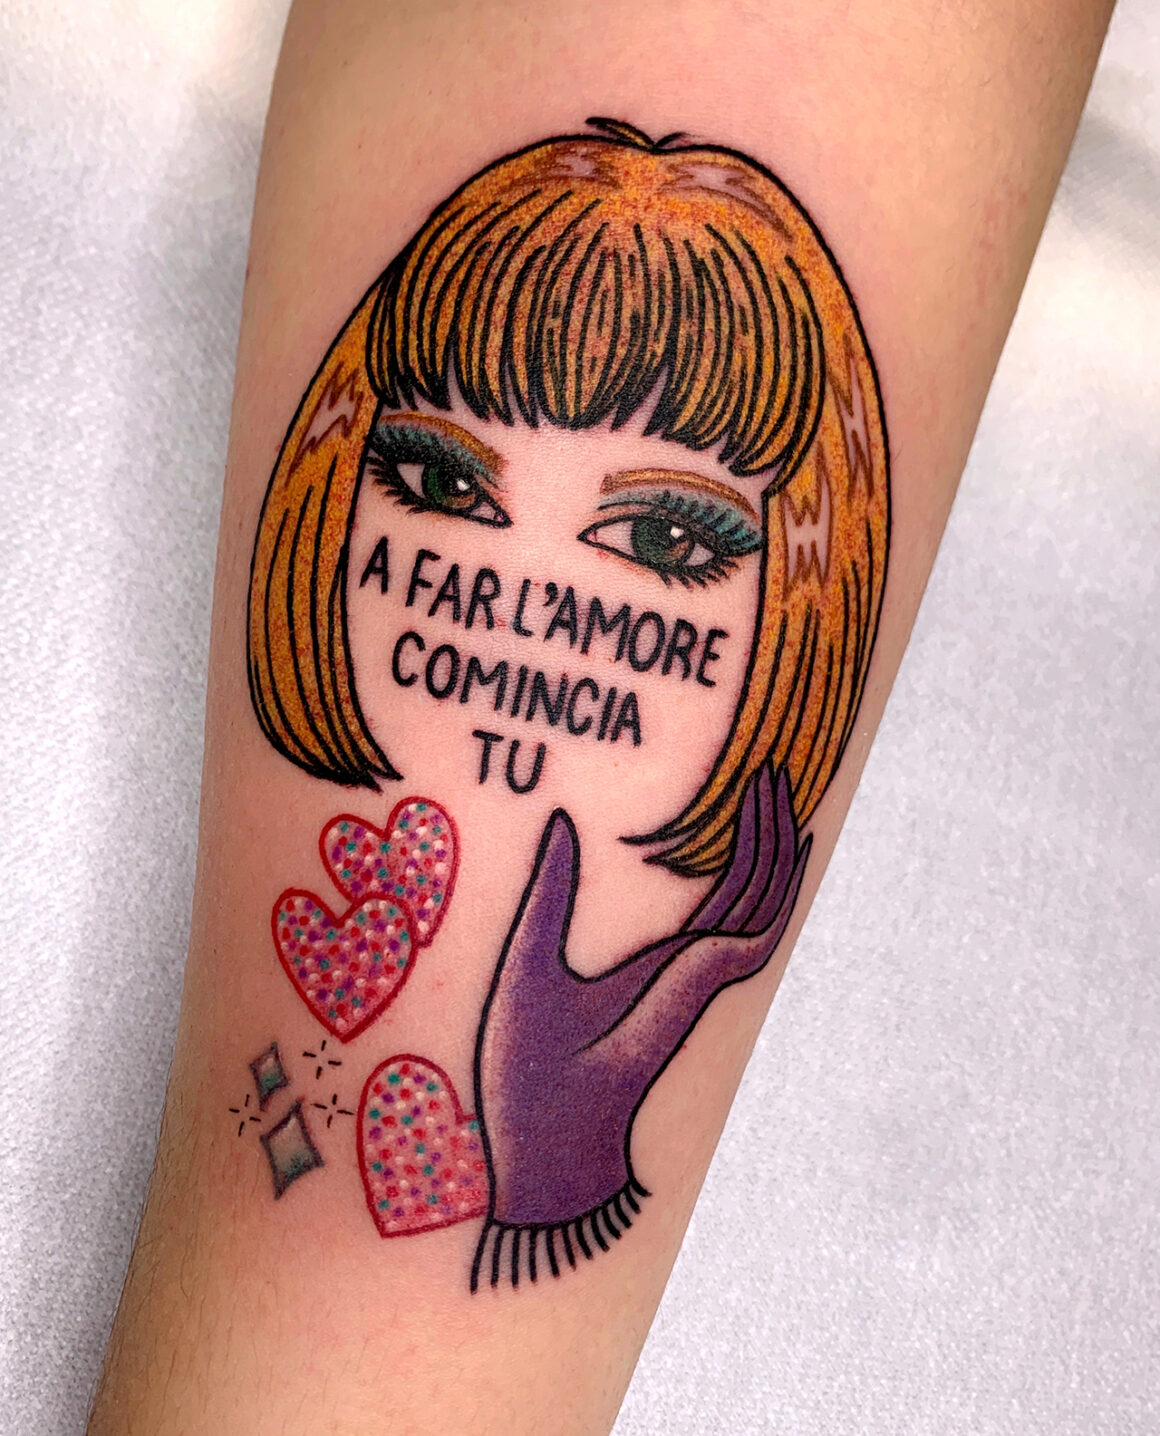 Tattoo by Victoria Dim Sum, @victoriadimsum